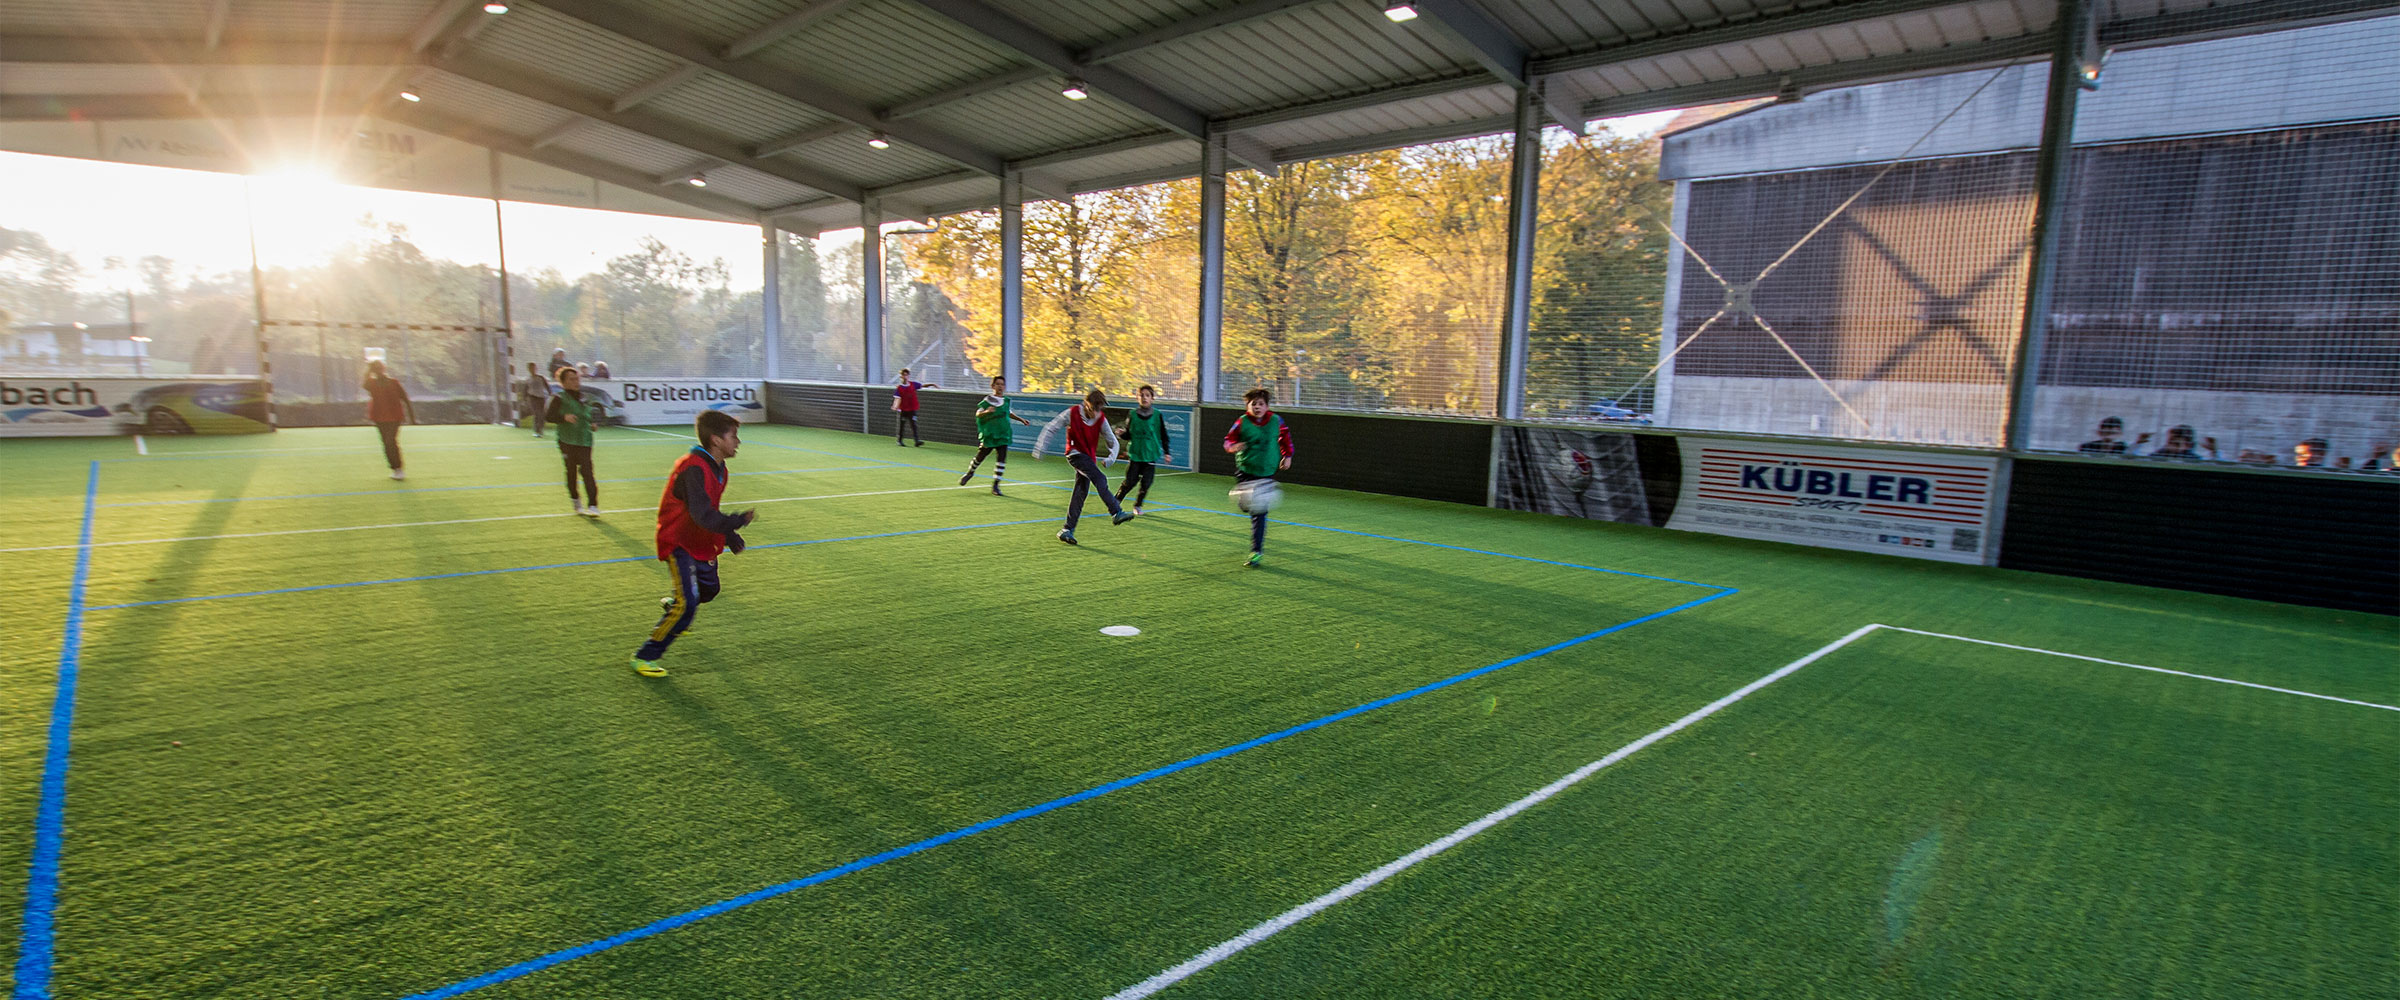 Fußball spielen in der McArena Soccerhalle Geislingen. Ob groß oder klein, die McArena freilufthalle ist für jeden geeignet.